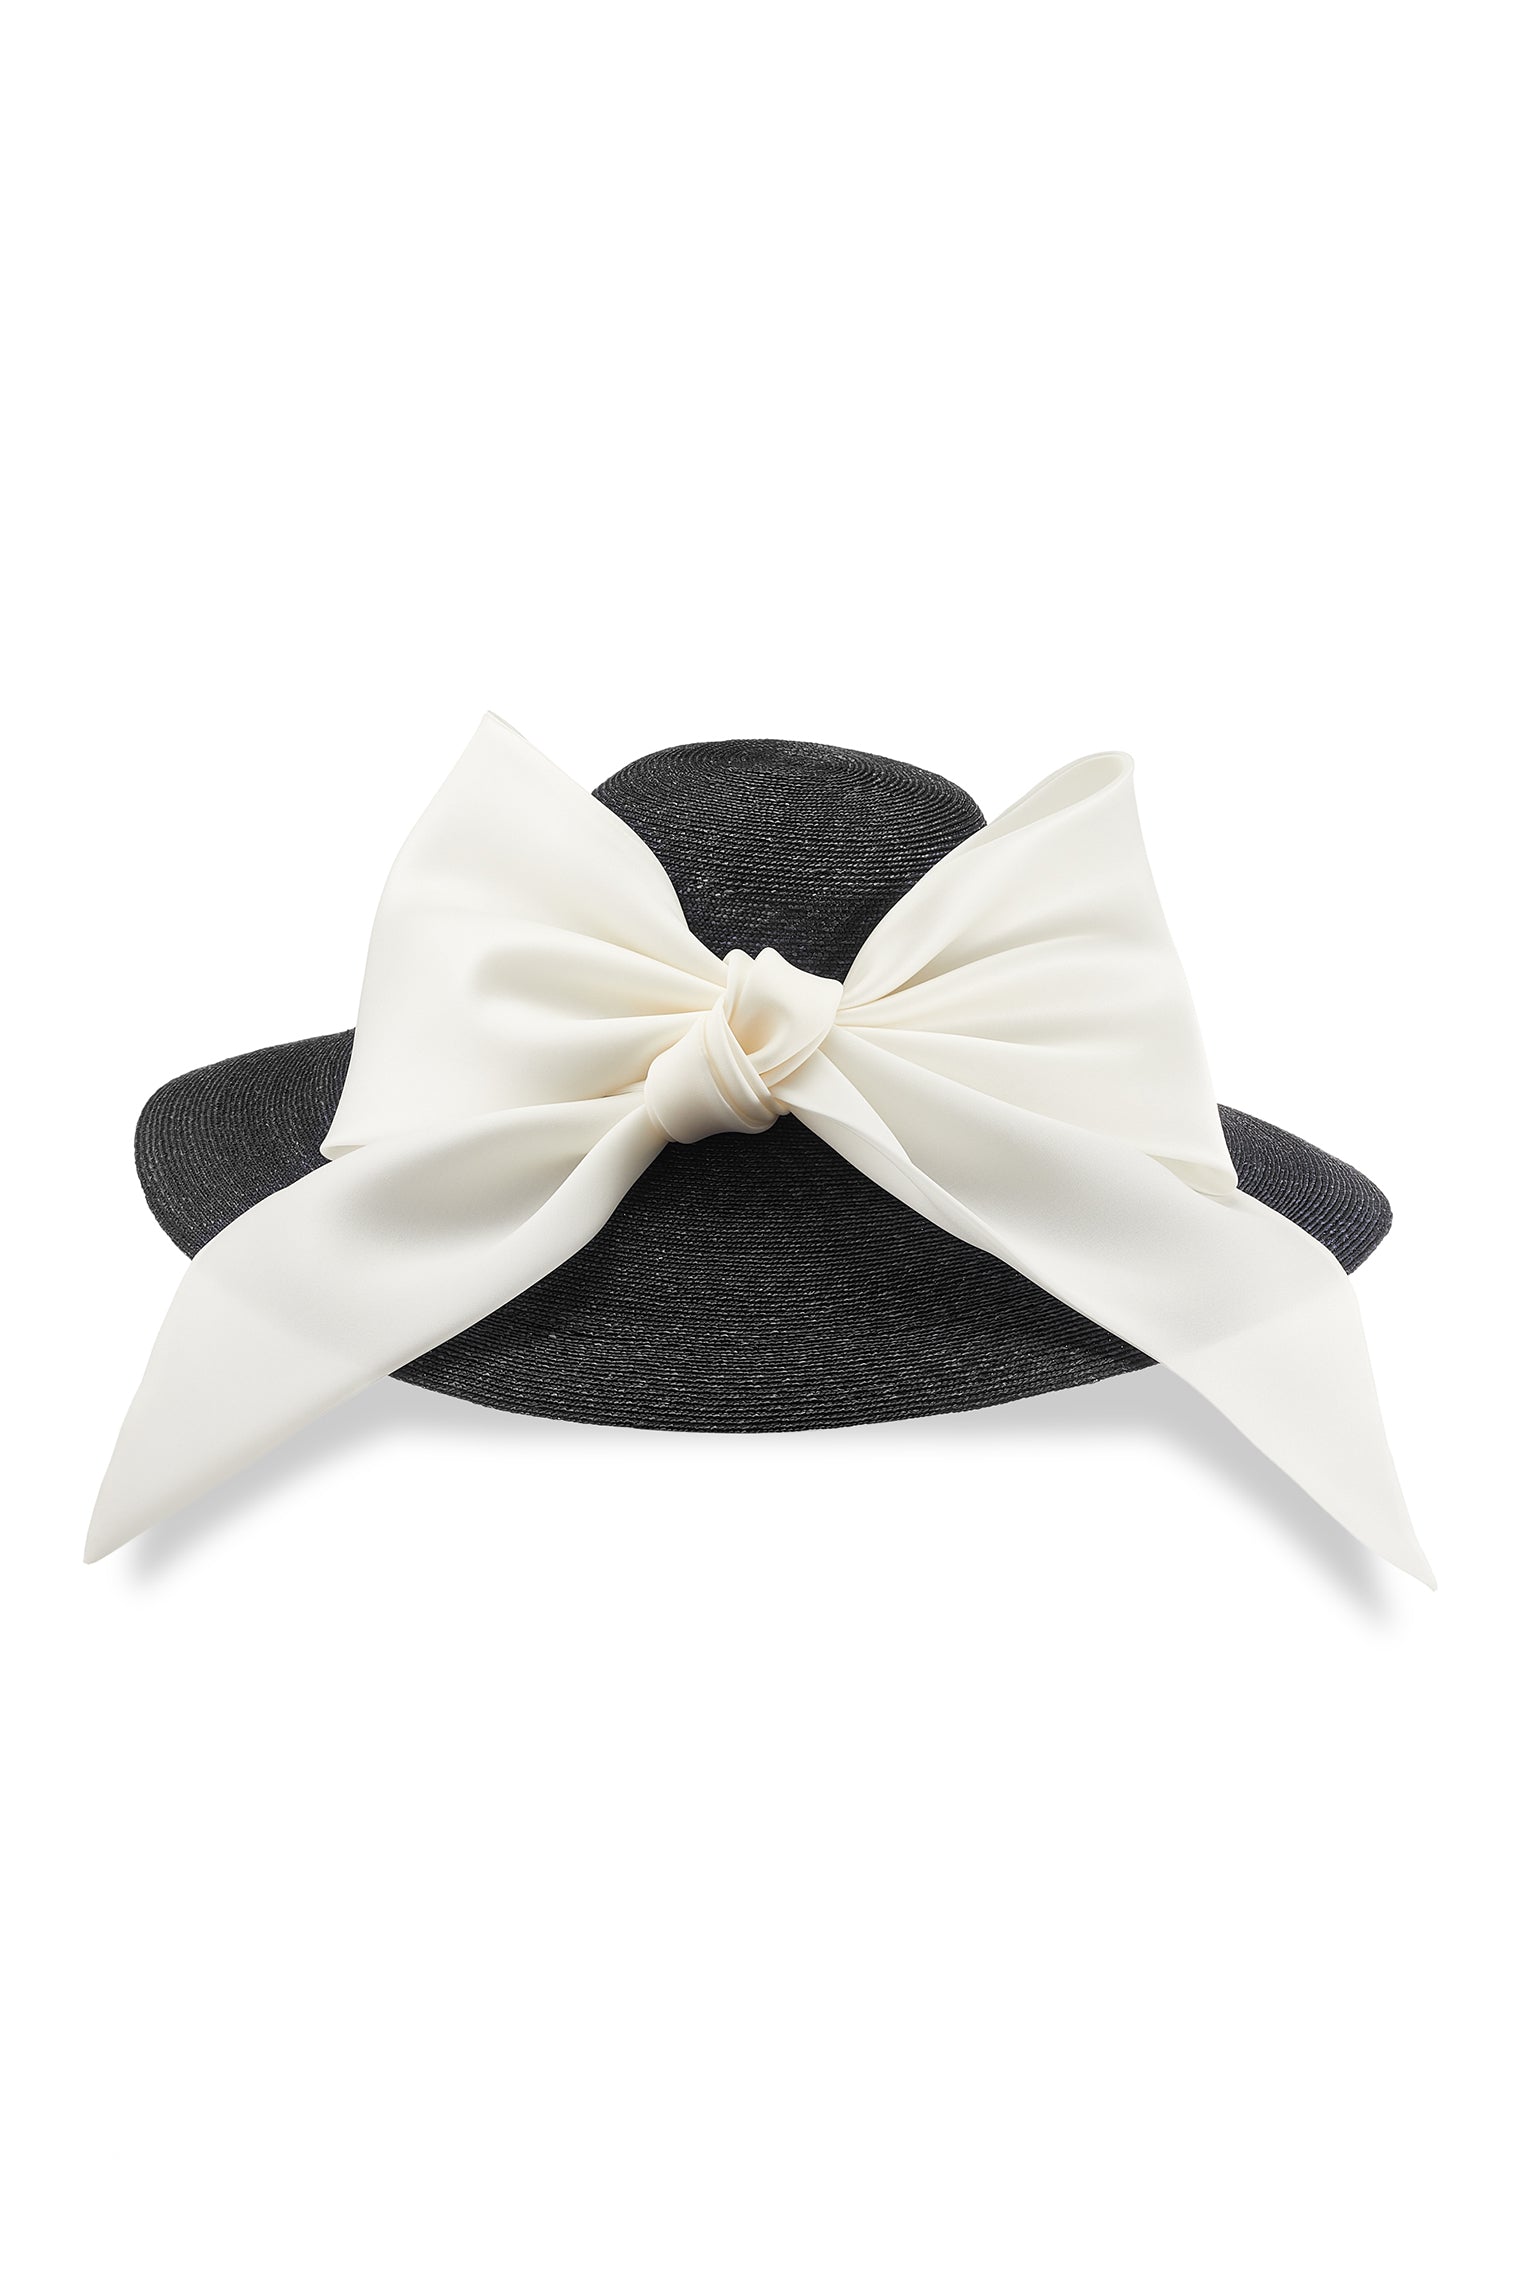 Darjeeling Black Wide Brim Hat - Women’s Hats - Lock & Co. Hatters London UK